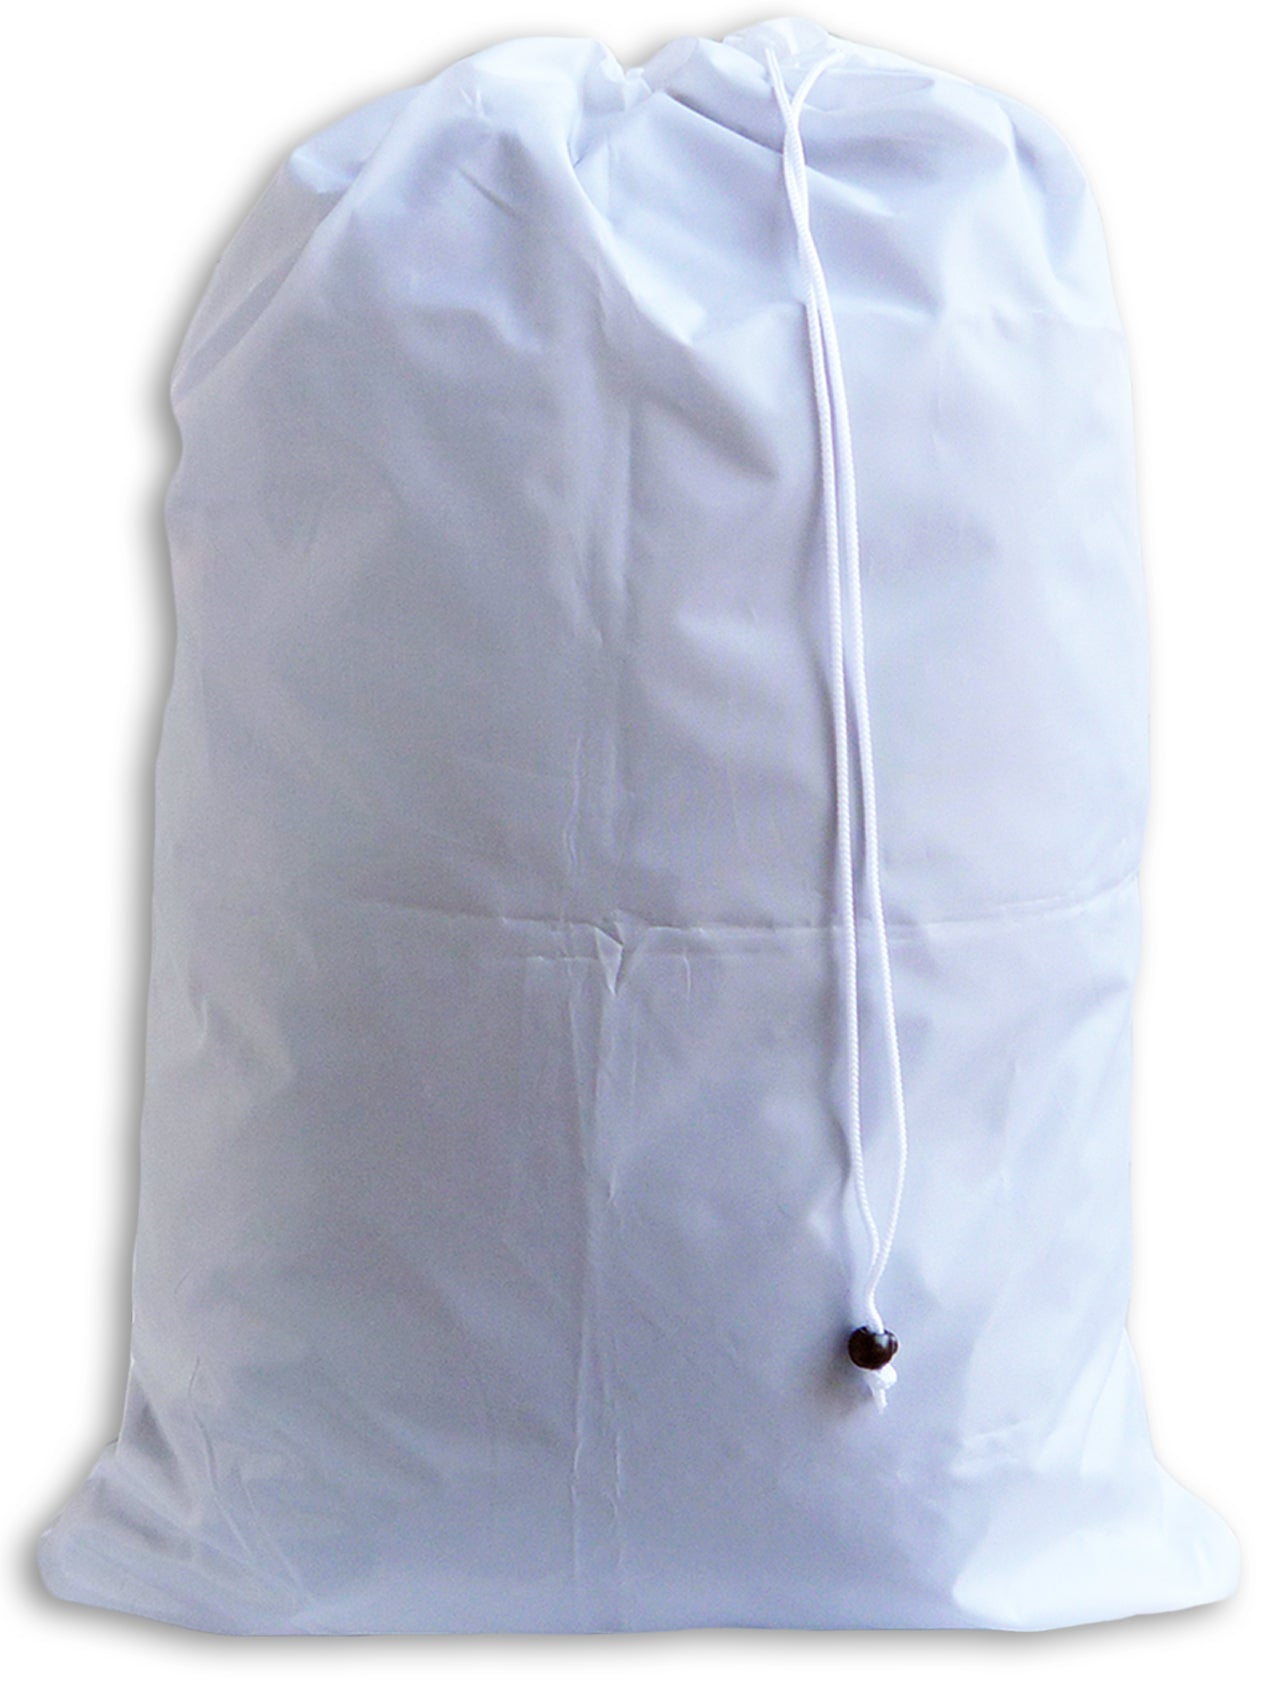 Extra Large Laundry Bag, White